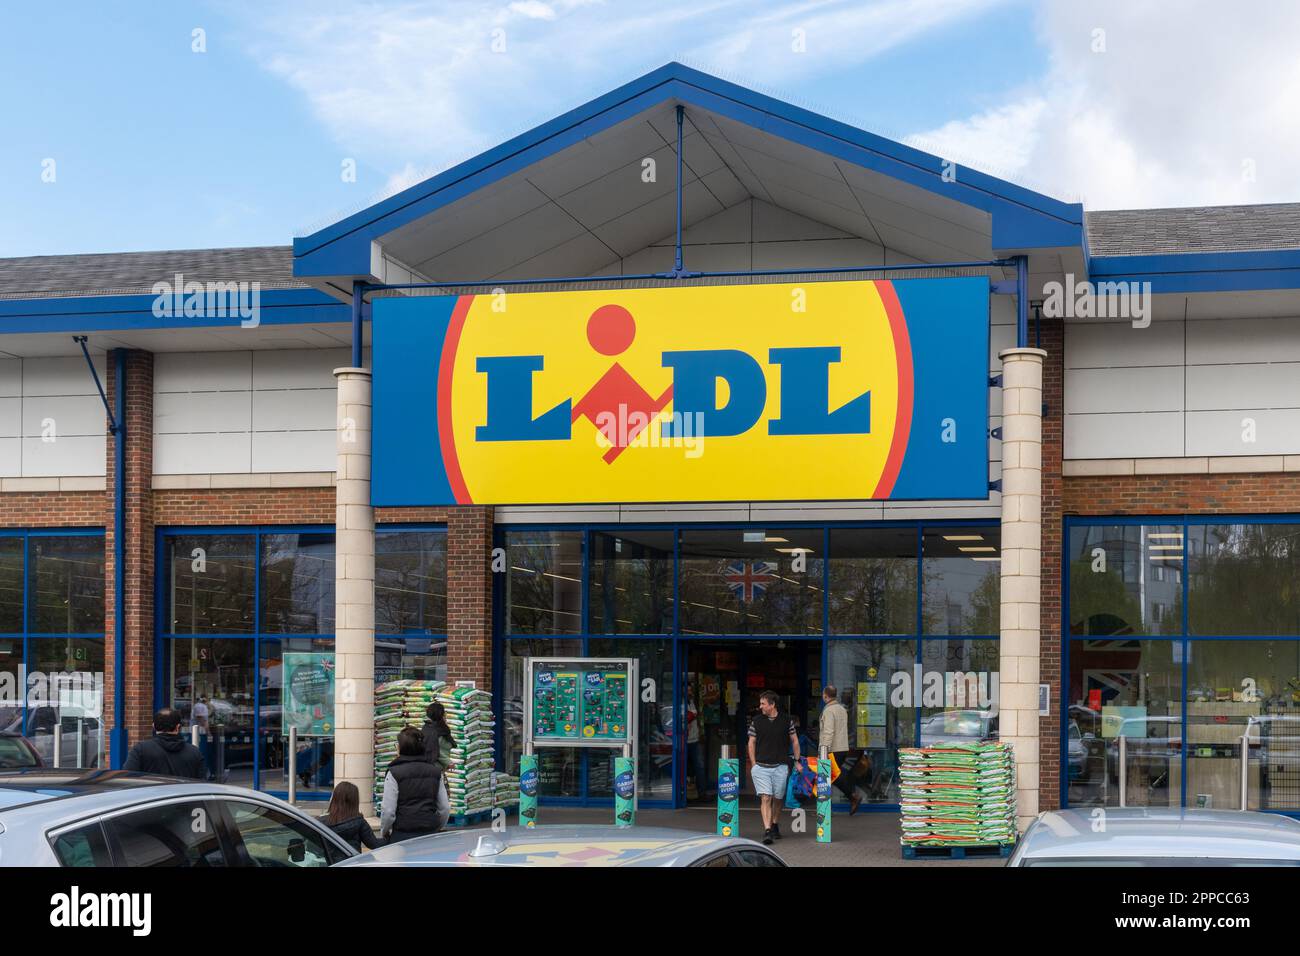 Avant du supermarché Lidl et panneau avec les acheteurs, Angleterre, Royaume-Uni Banque D'Images